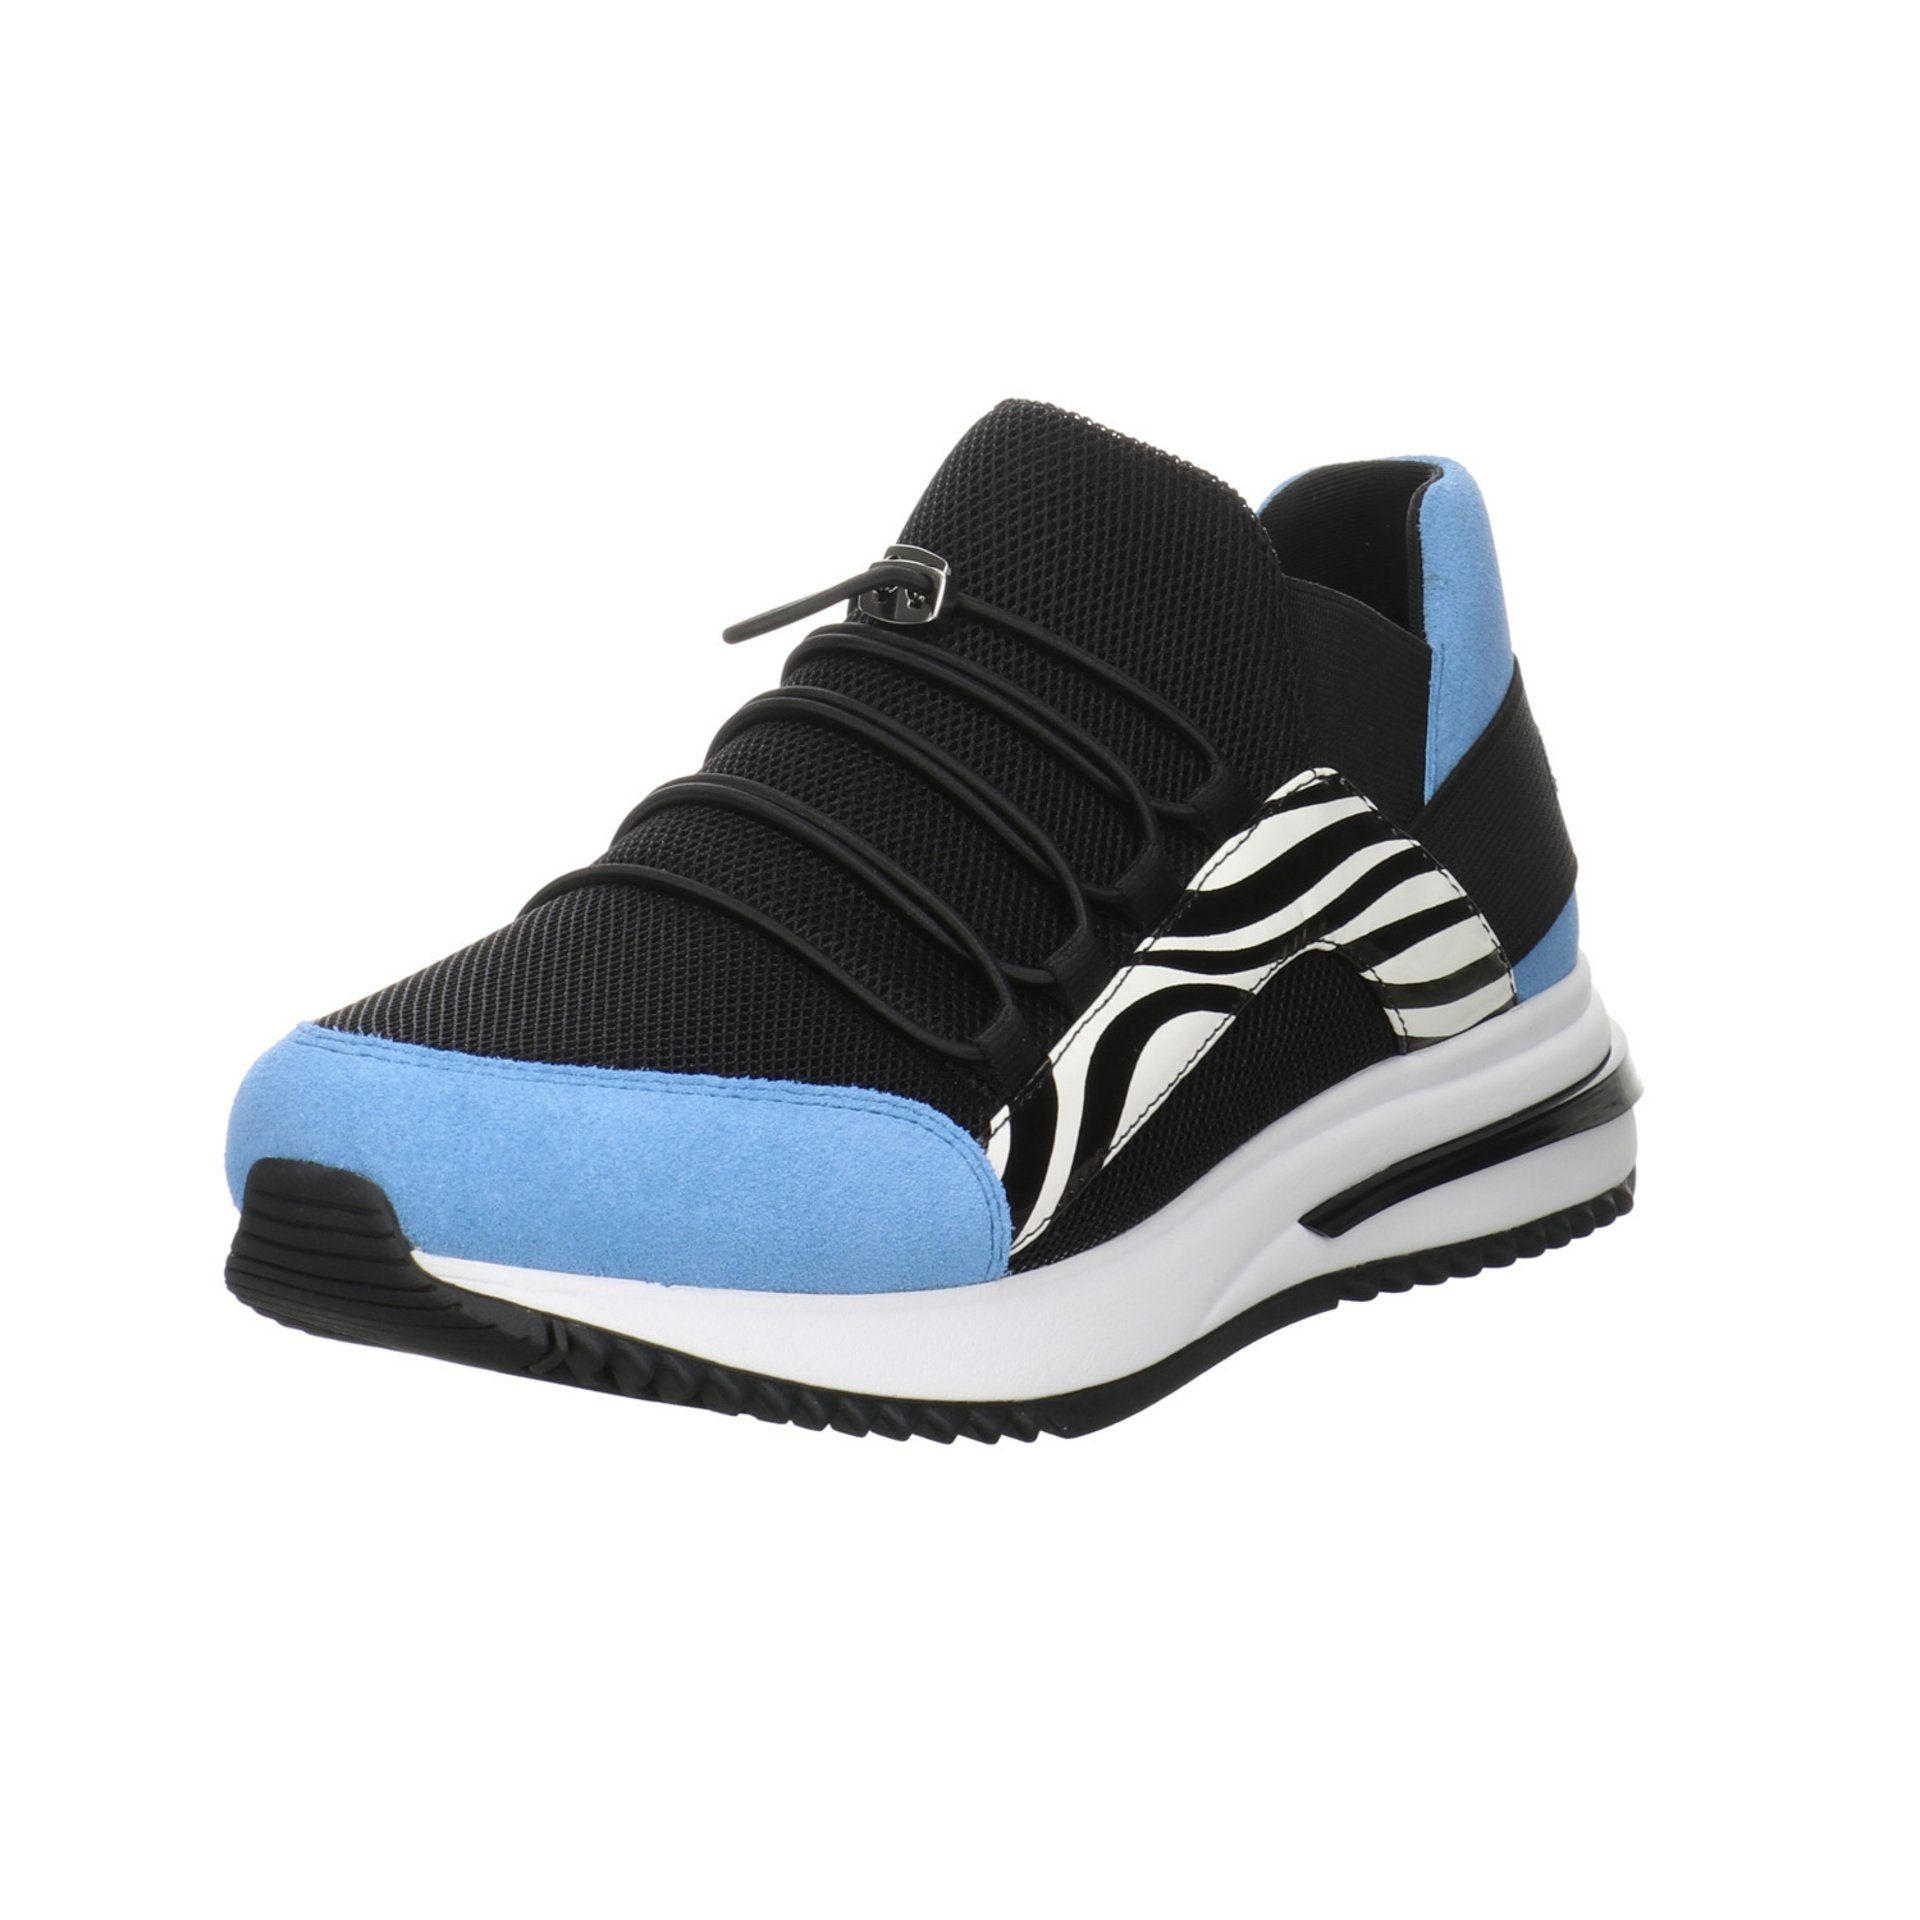 Marc Cain Damen Slipper Schuhe Sneaker Slip-Ons Freizeit Slip-On Sneaker  Leder-/Textilkombination